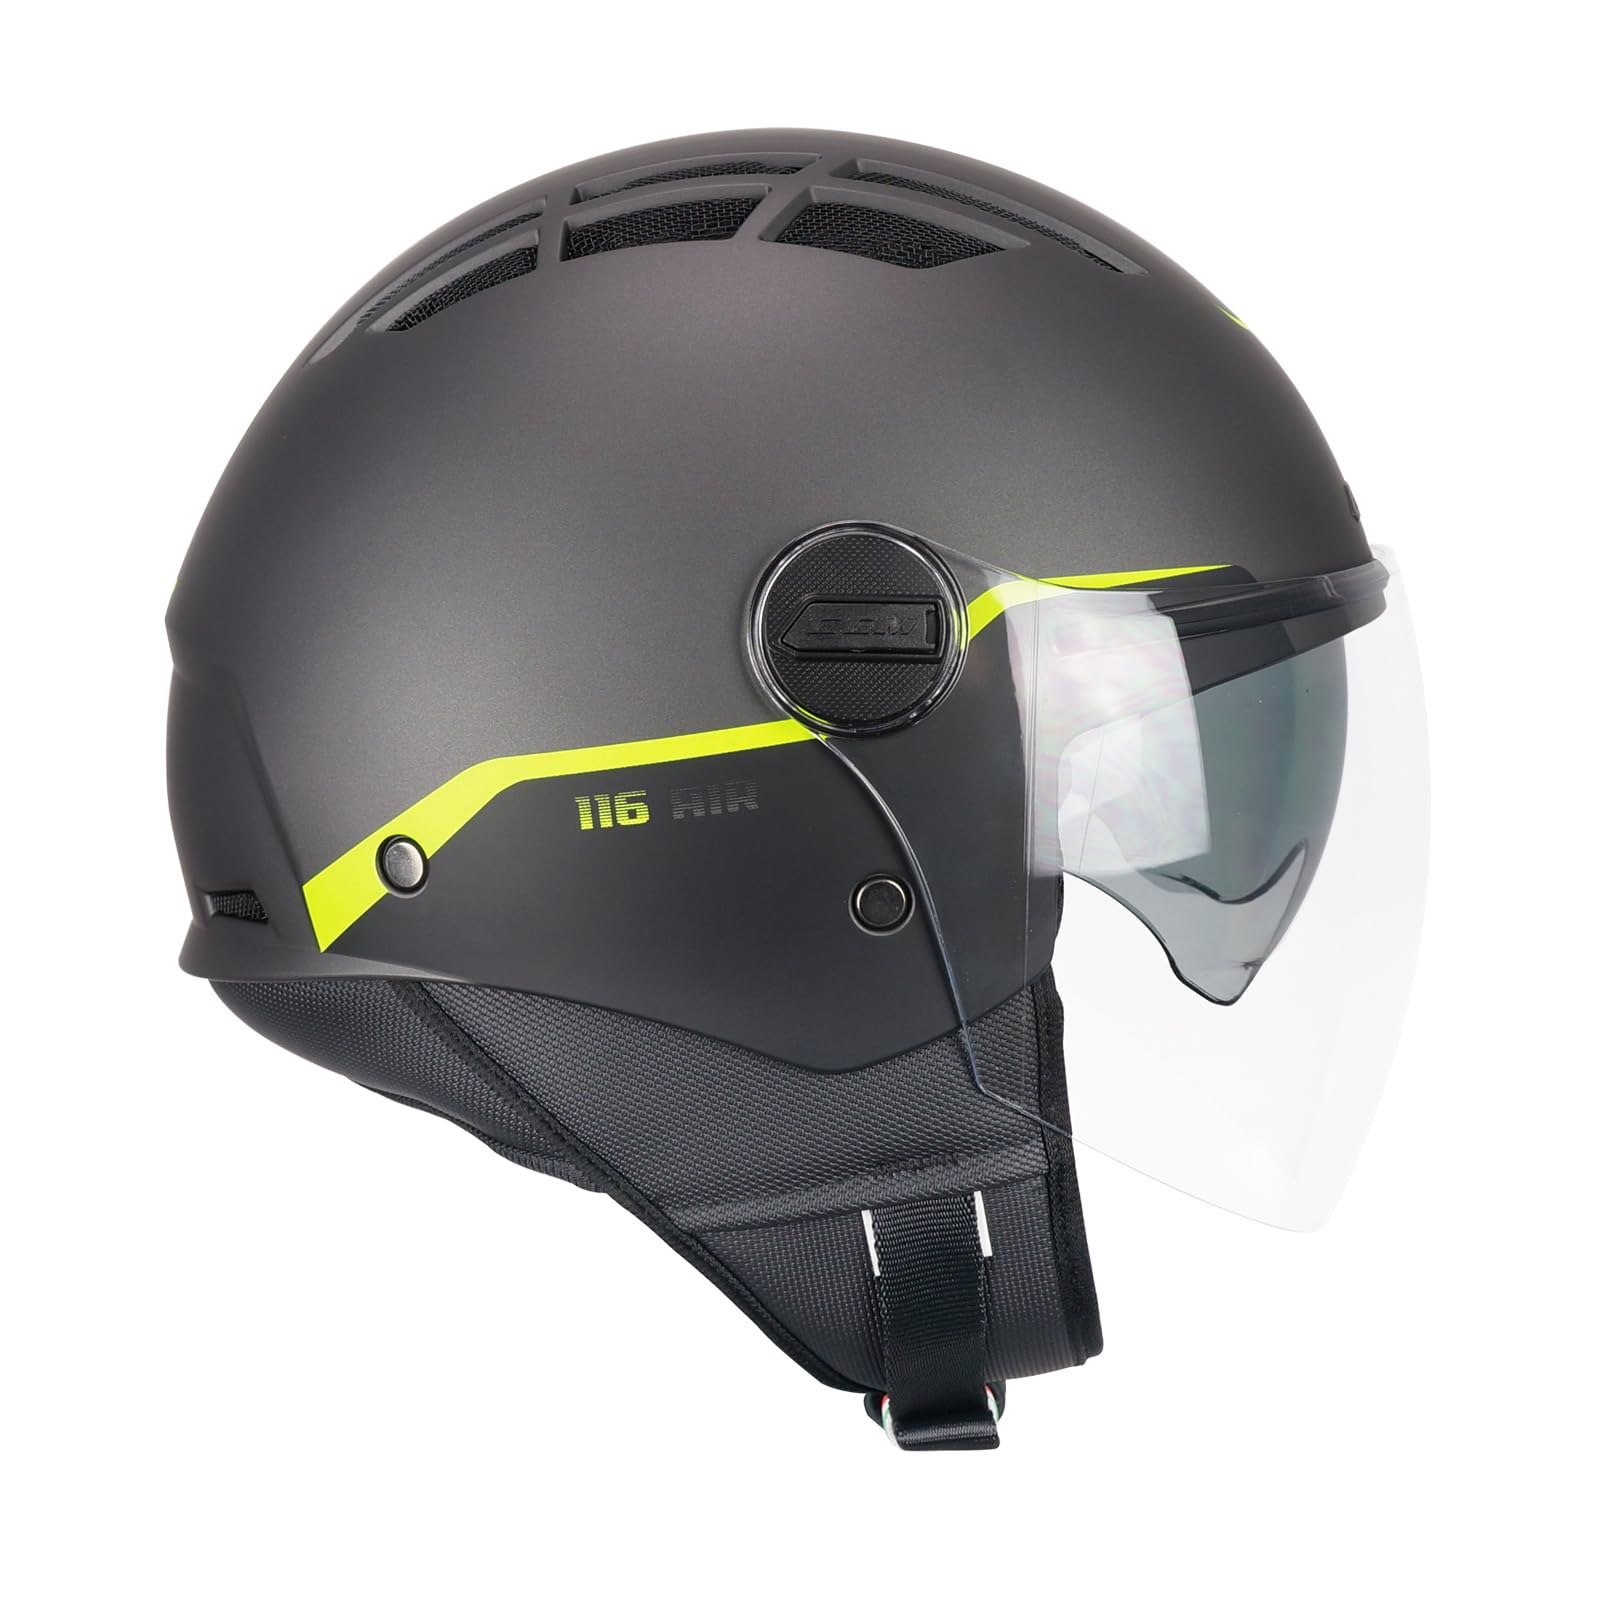 CGM Helm mit offenem Gesicht, 116G Air Bio, Graphit, Neongelb, matt, XS (53-54 cm) von CGM